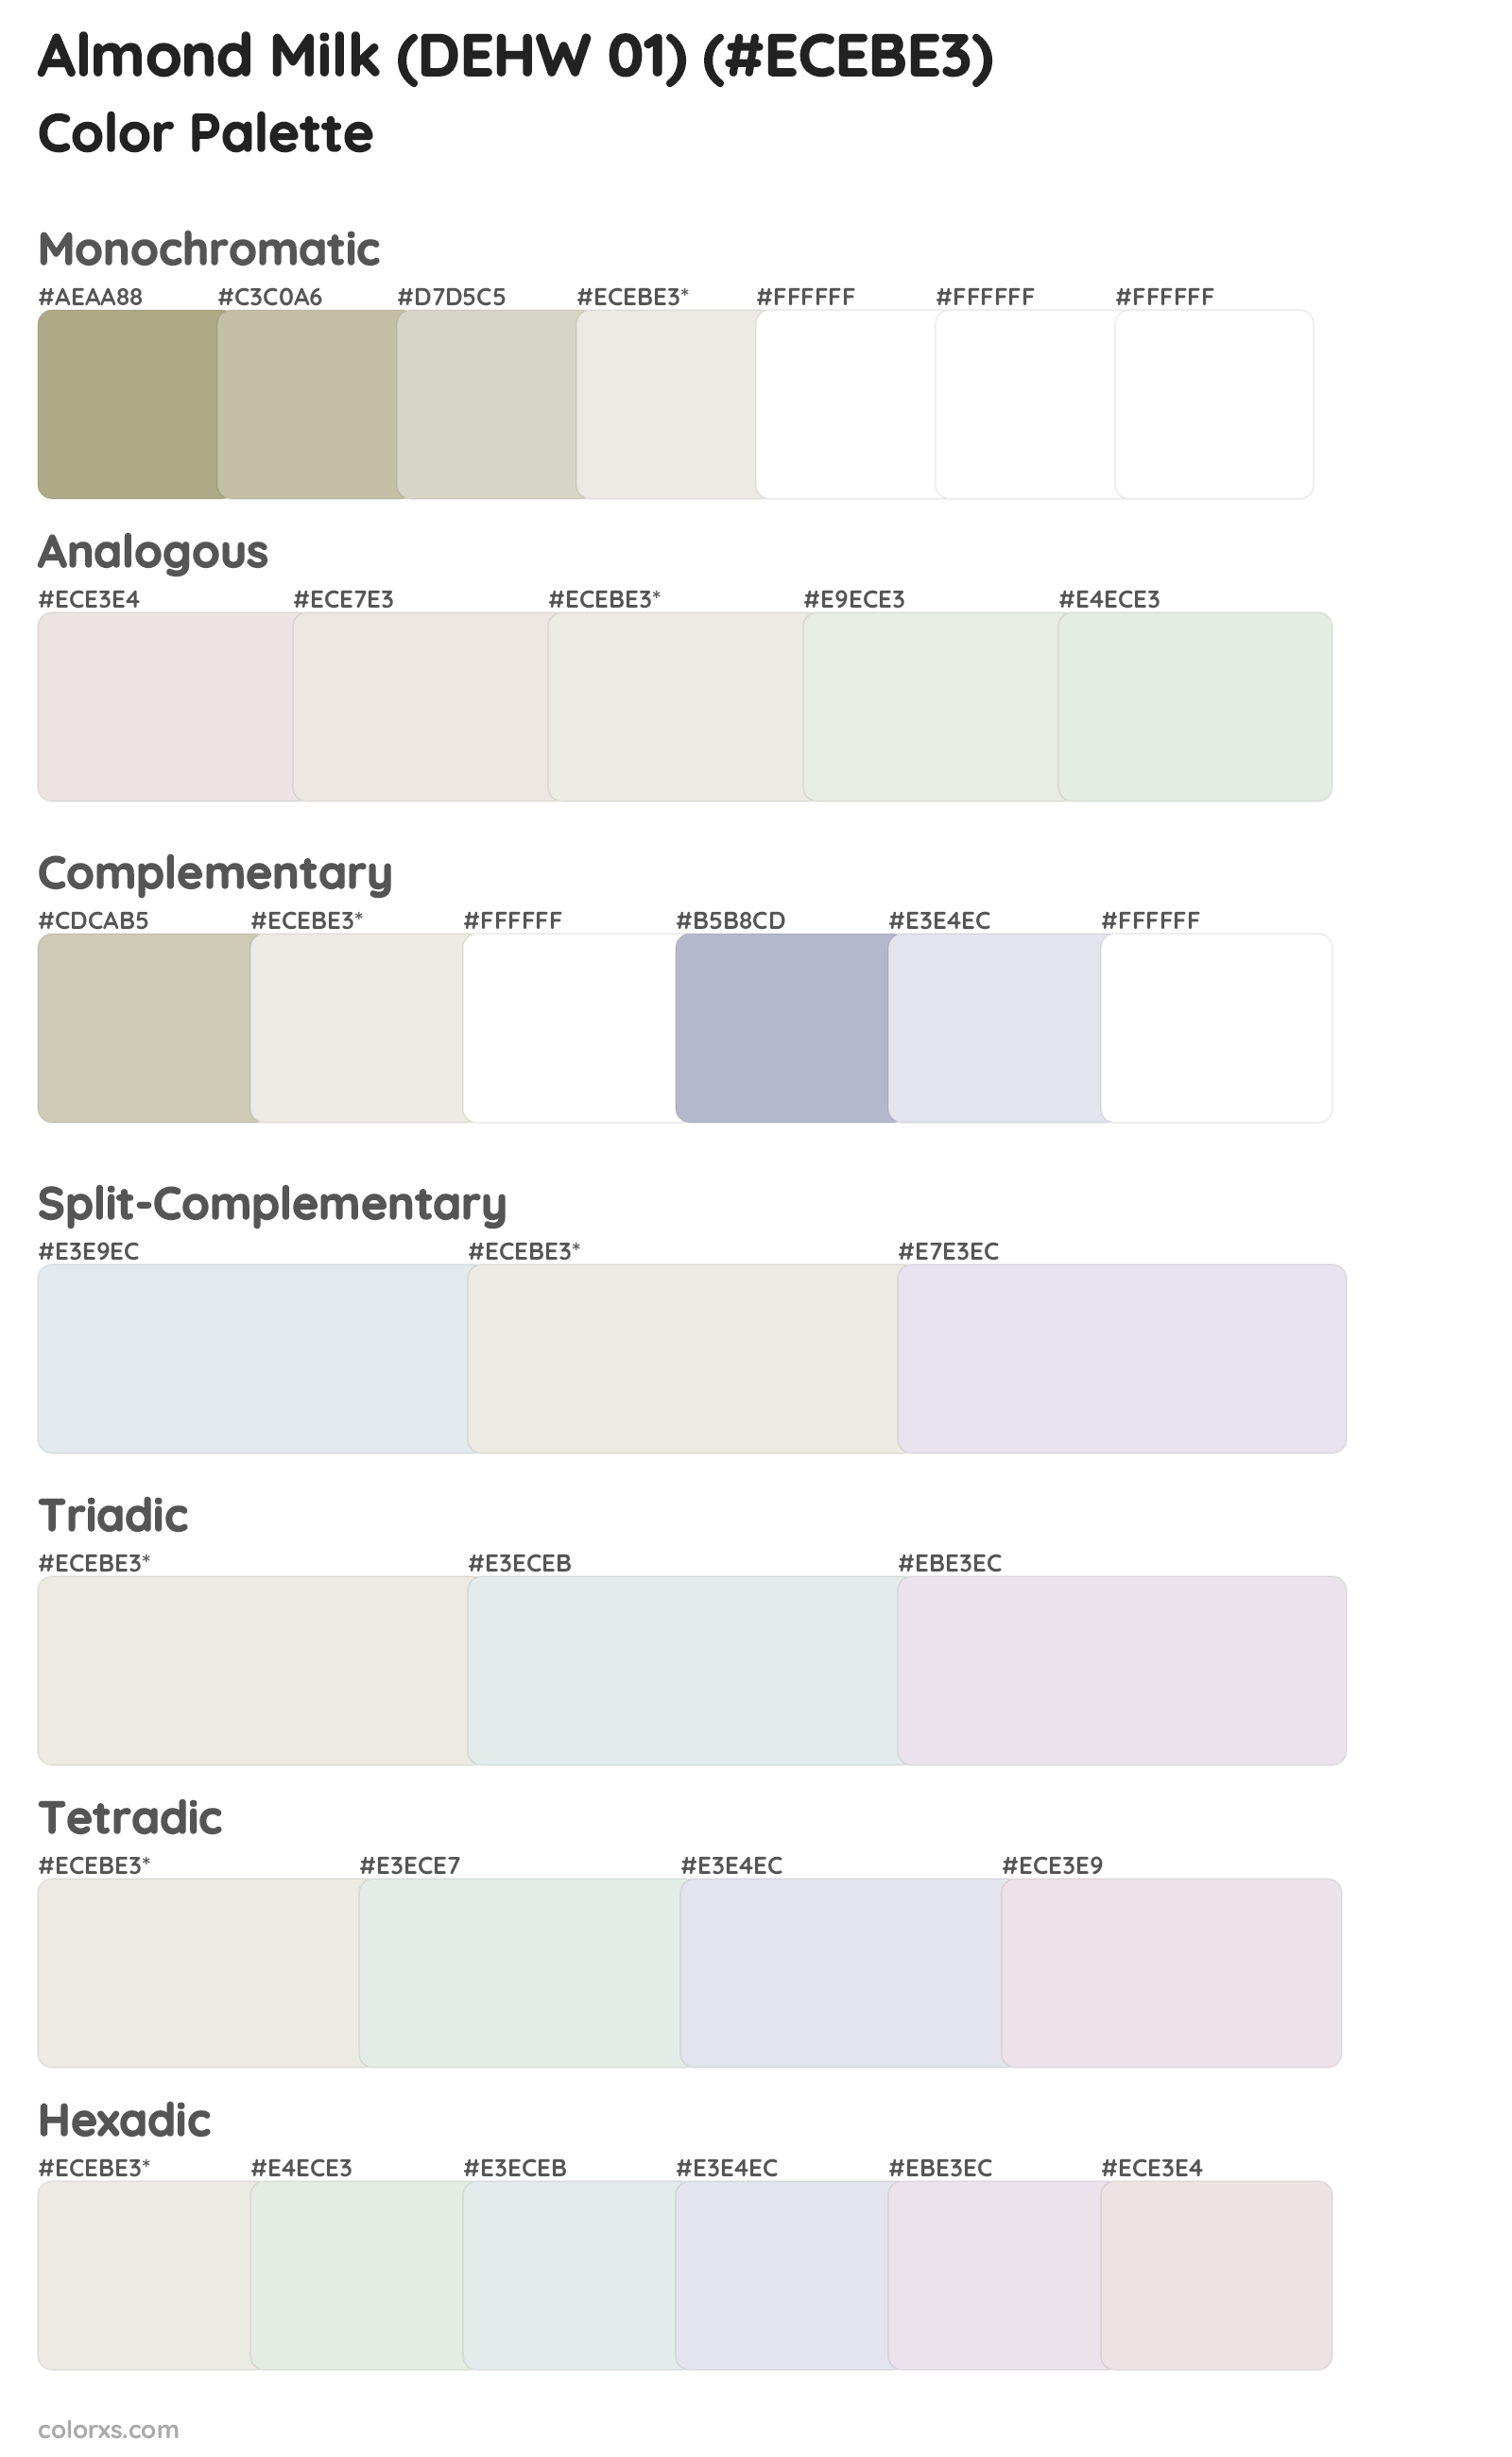 Almond Milk (DEHW 01) Color Scheme Palettes